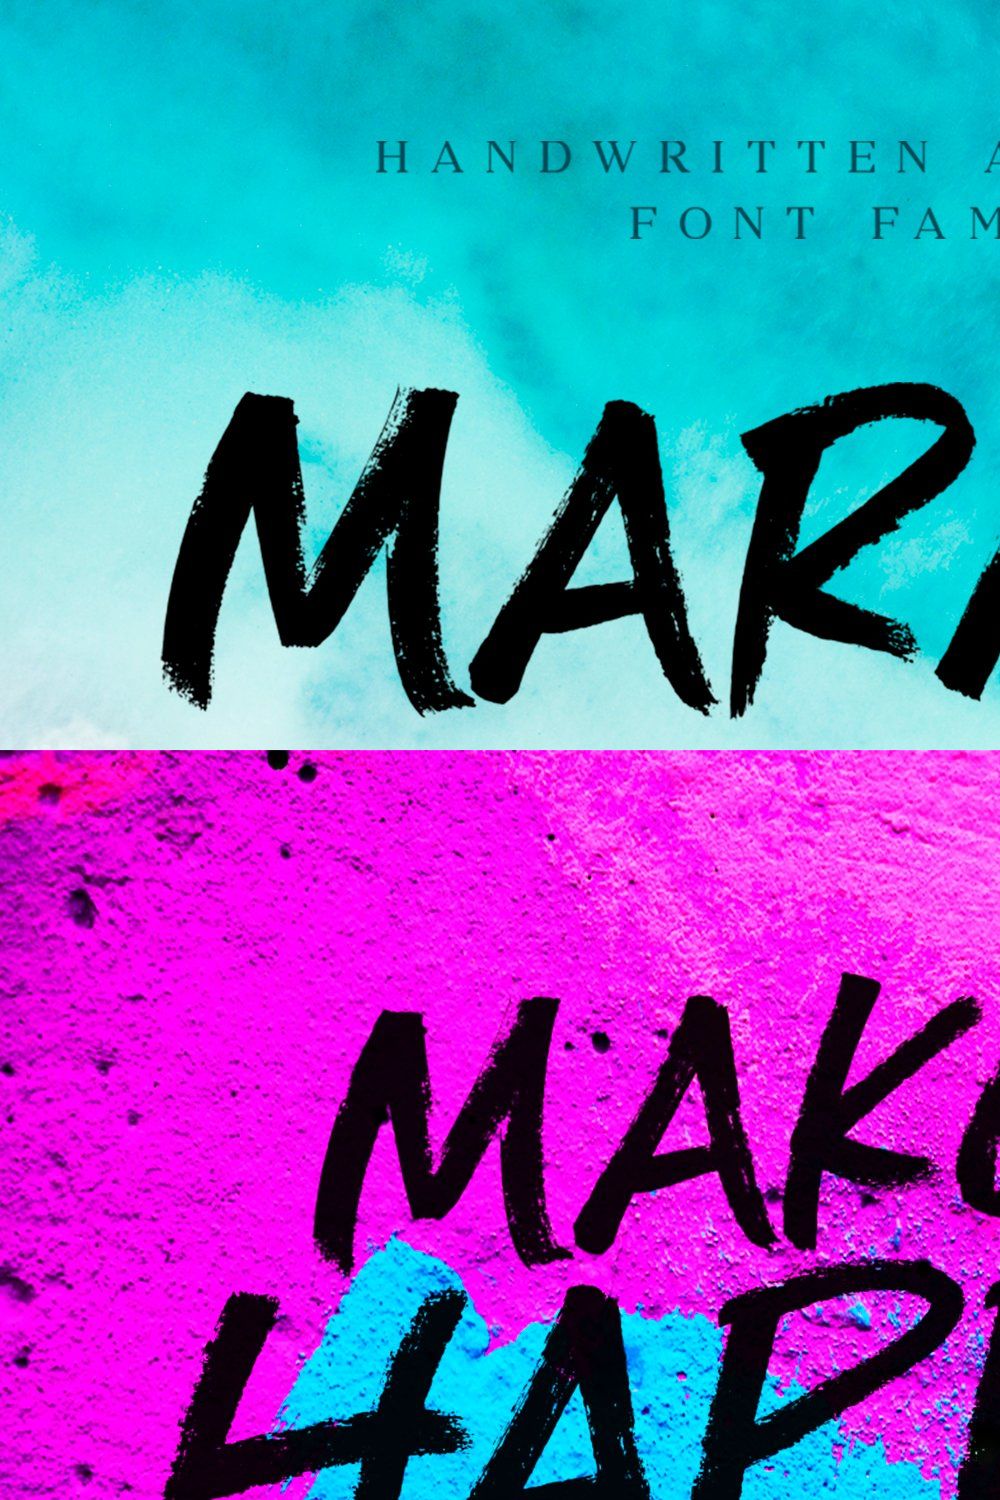 Maraka / handwrite font family pinterest preview image.